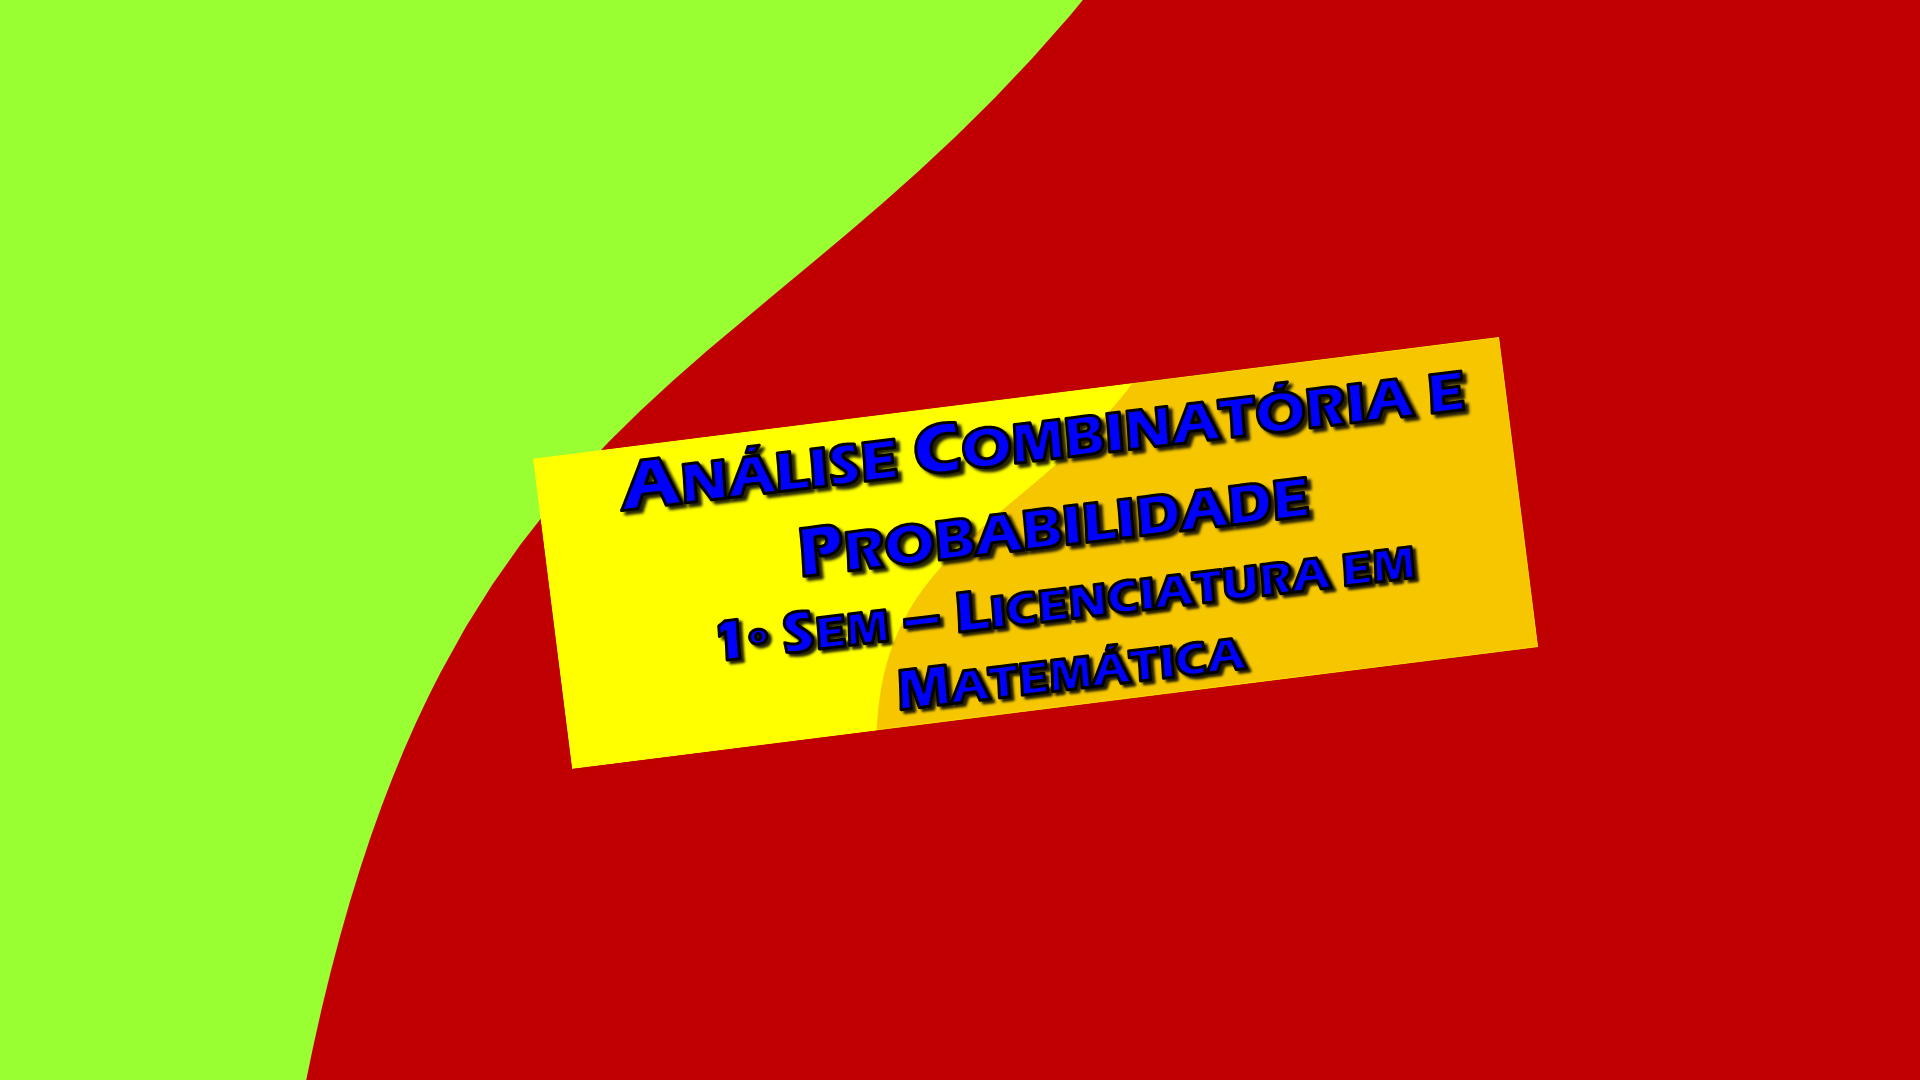 Análise Combinatória e Probabilidade – Lic. Matemática – 1º Sem  – Prof. Giácomo